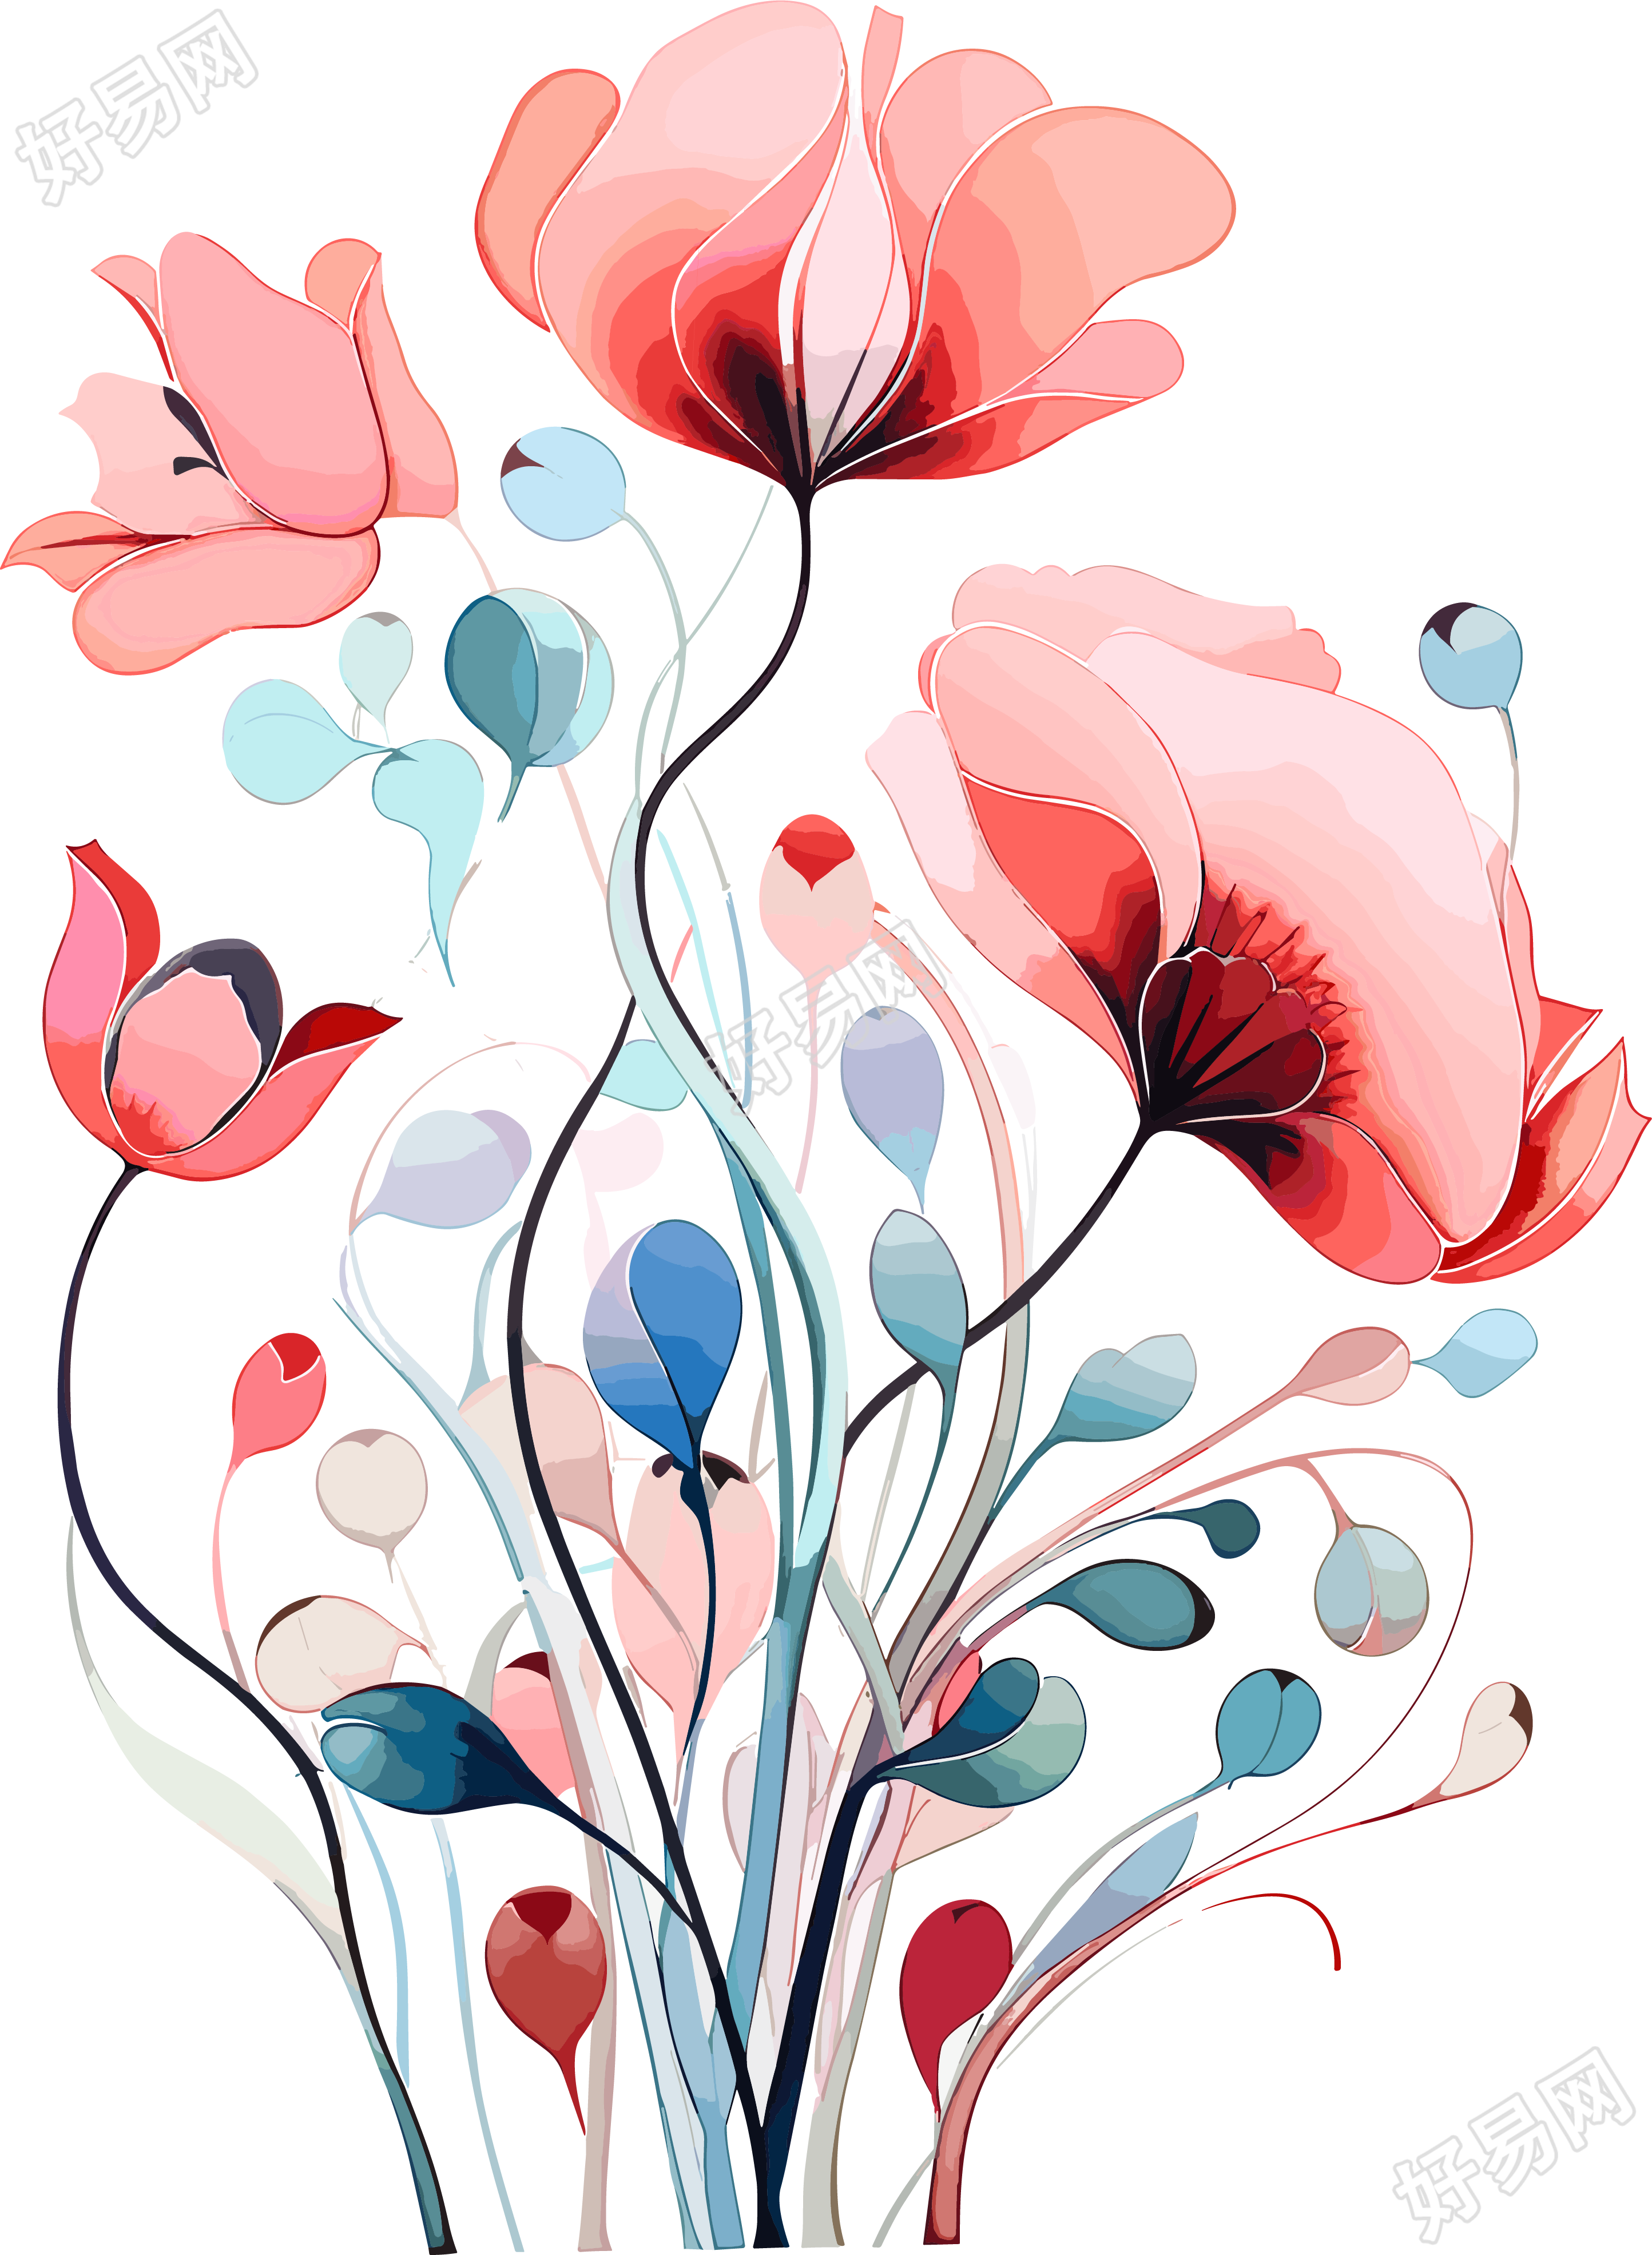 花卉装饰创意设计PNG图形素材